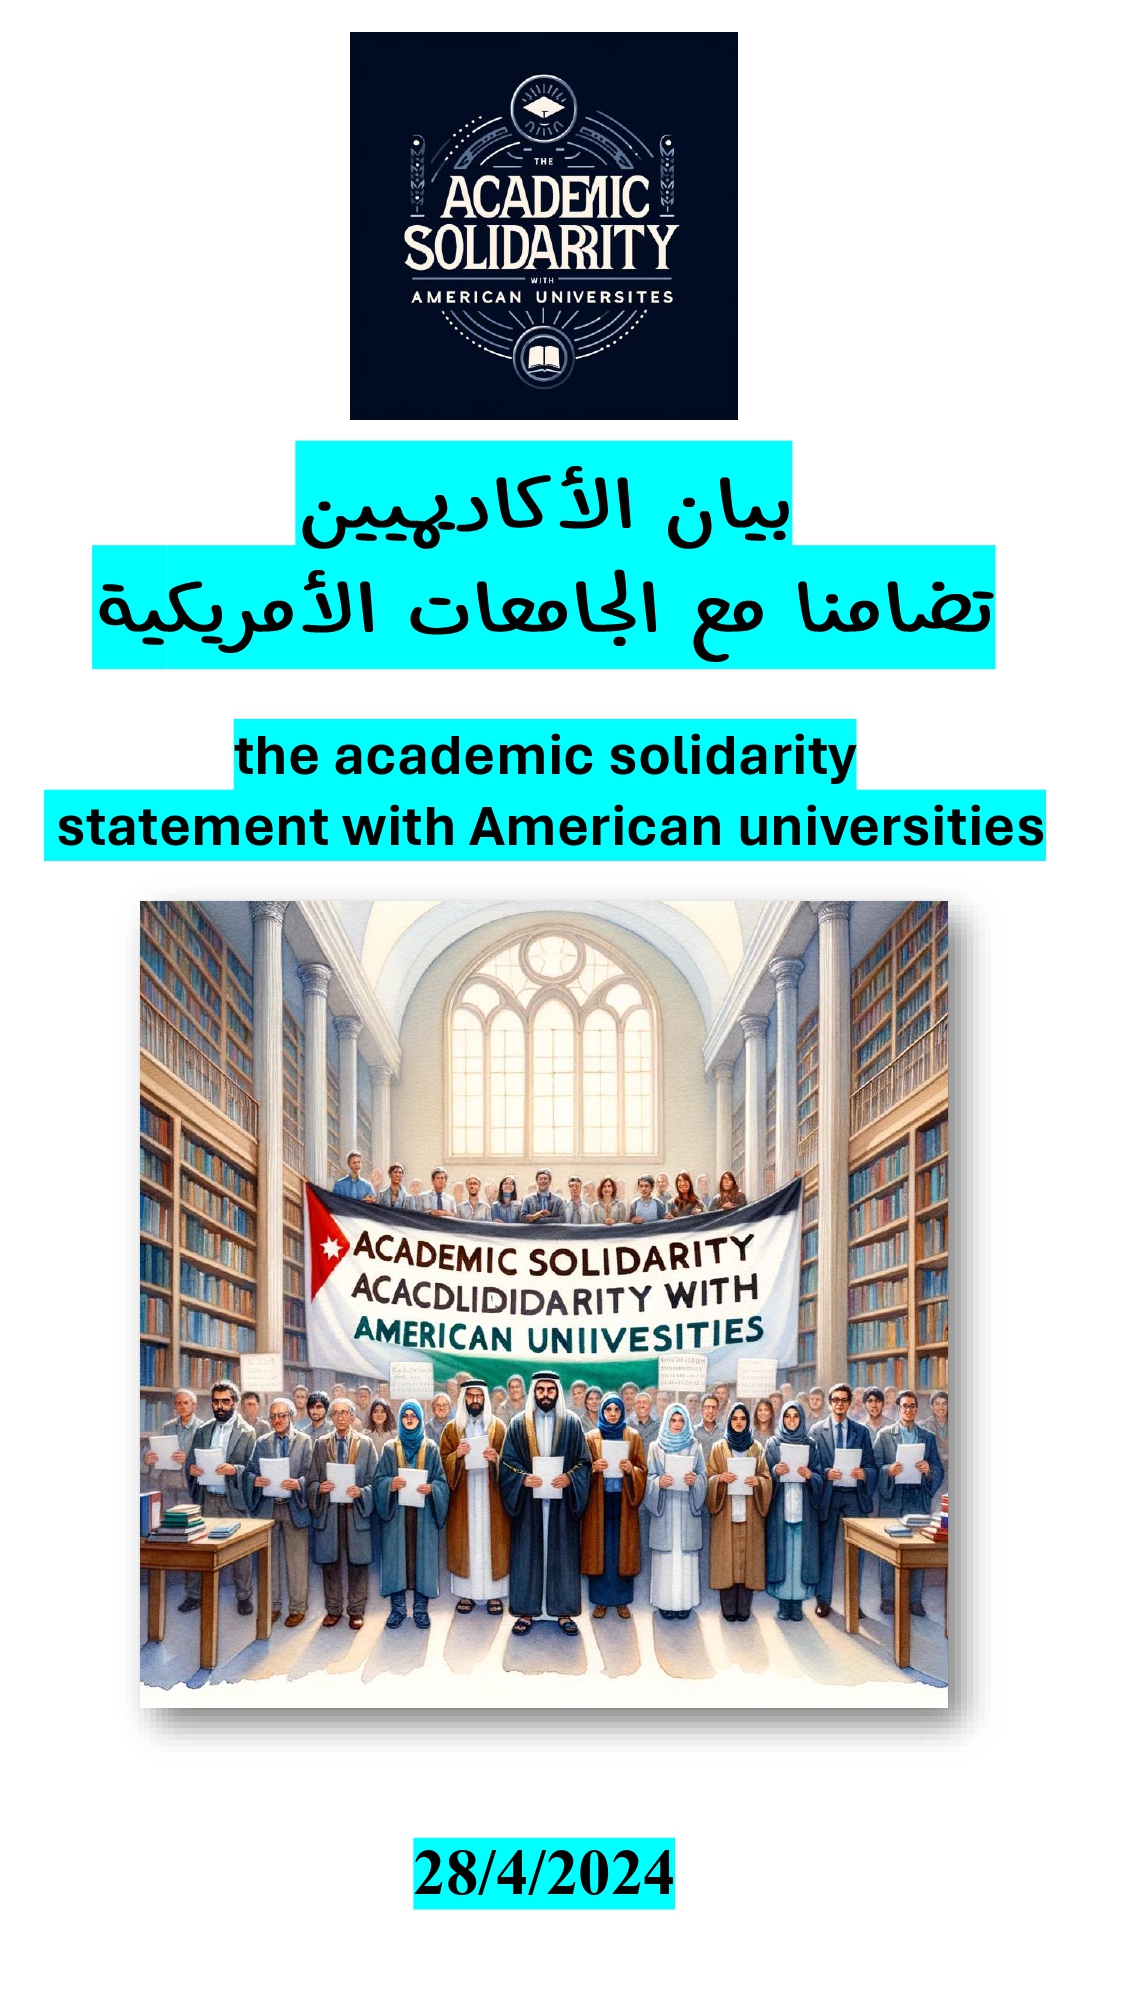 اكاديميون اردنيون يصدرون بيانا حول حراك الجامعات الامريكية - اسماء